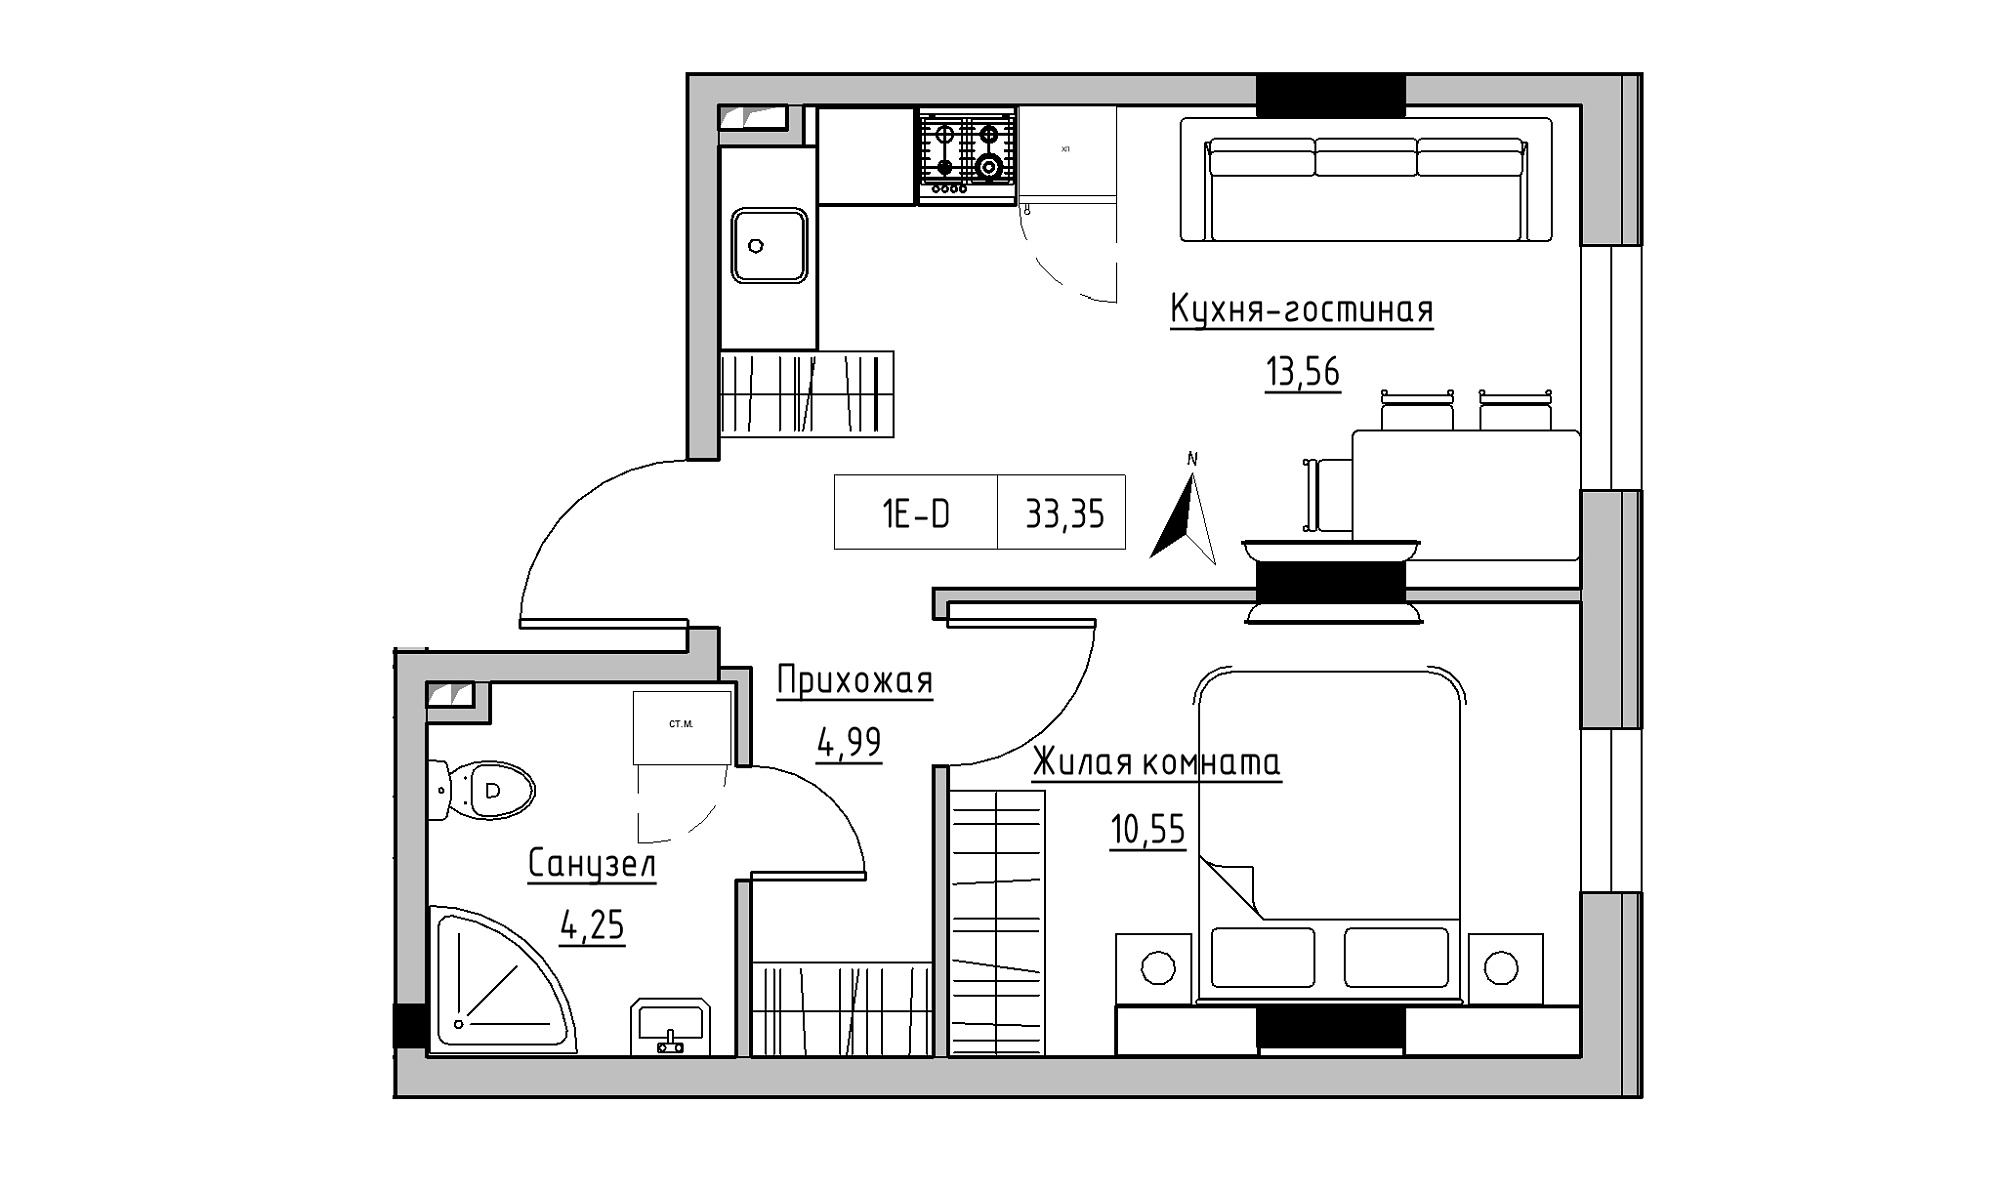 Планировка 1-к квартира площей 33.35м2, KS-025-01/0002.